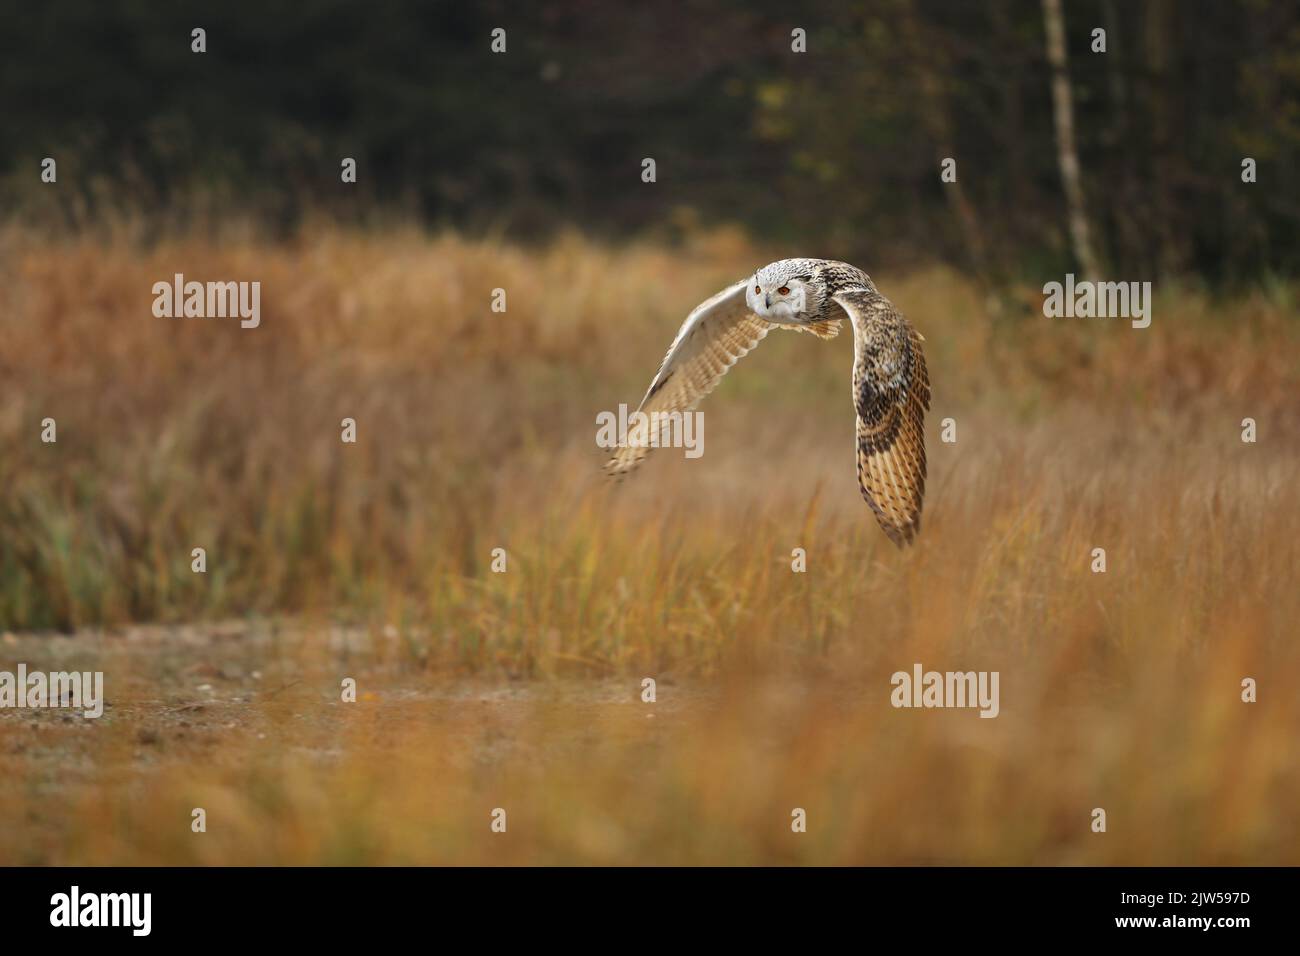 Scène d'automne avec hibou. Grand hibou de l'aigle de Sibérie orientale, Bubo bubo sibiricus, voler à travers le paysage d'automne, Russie. Banque D'Images